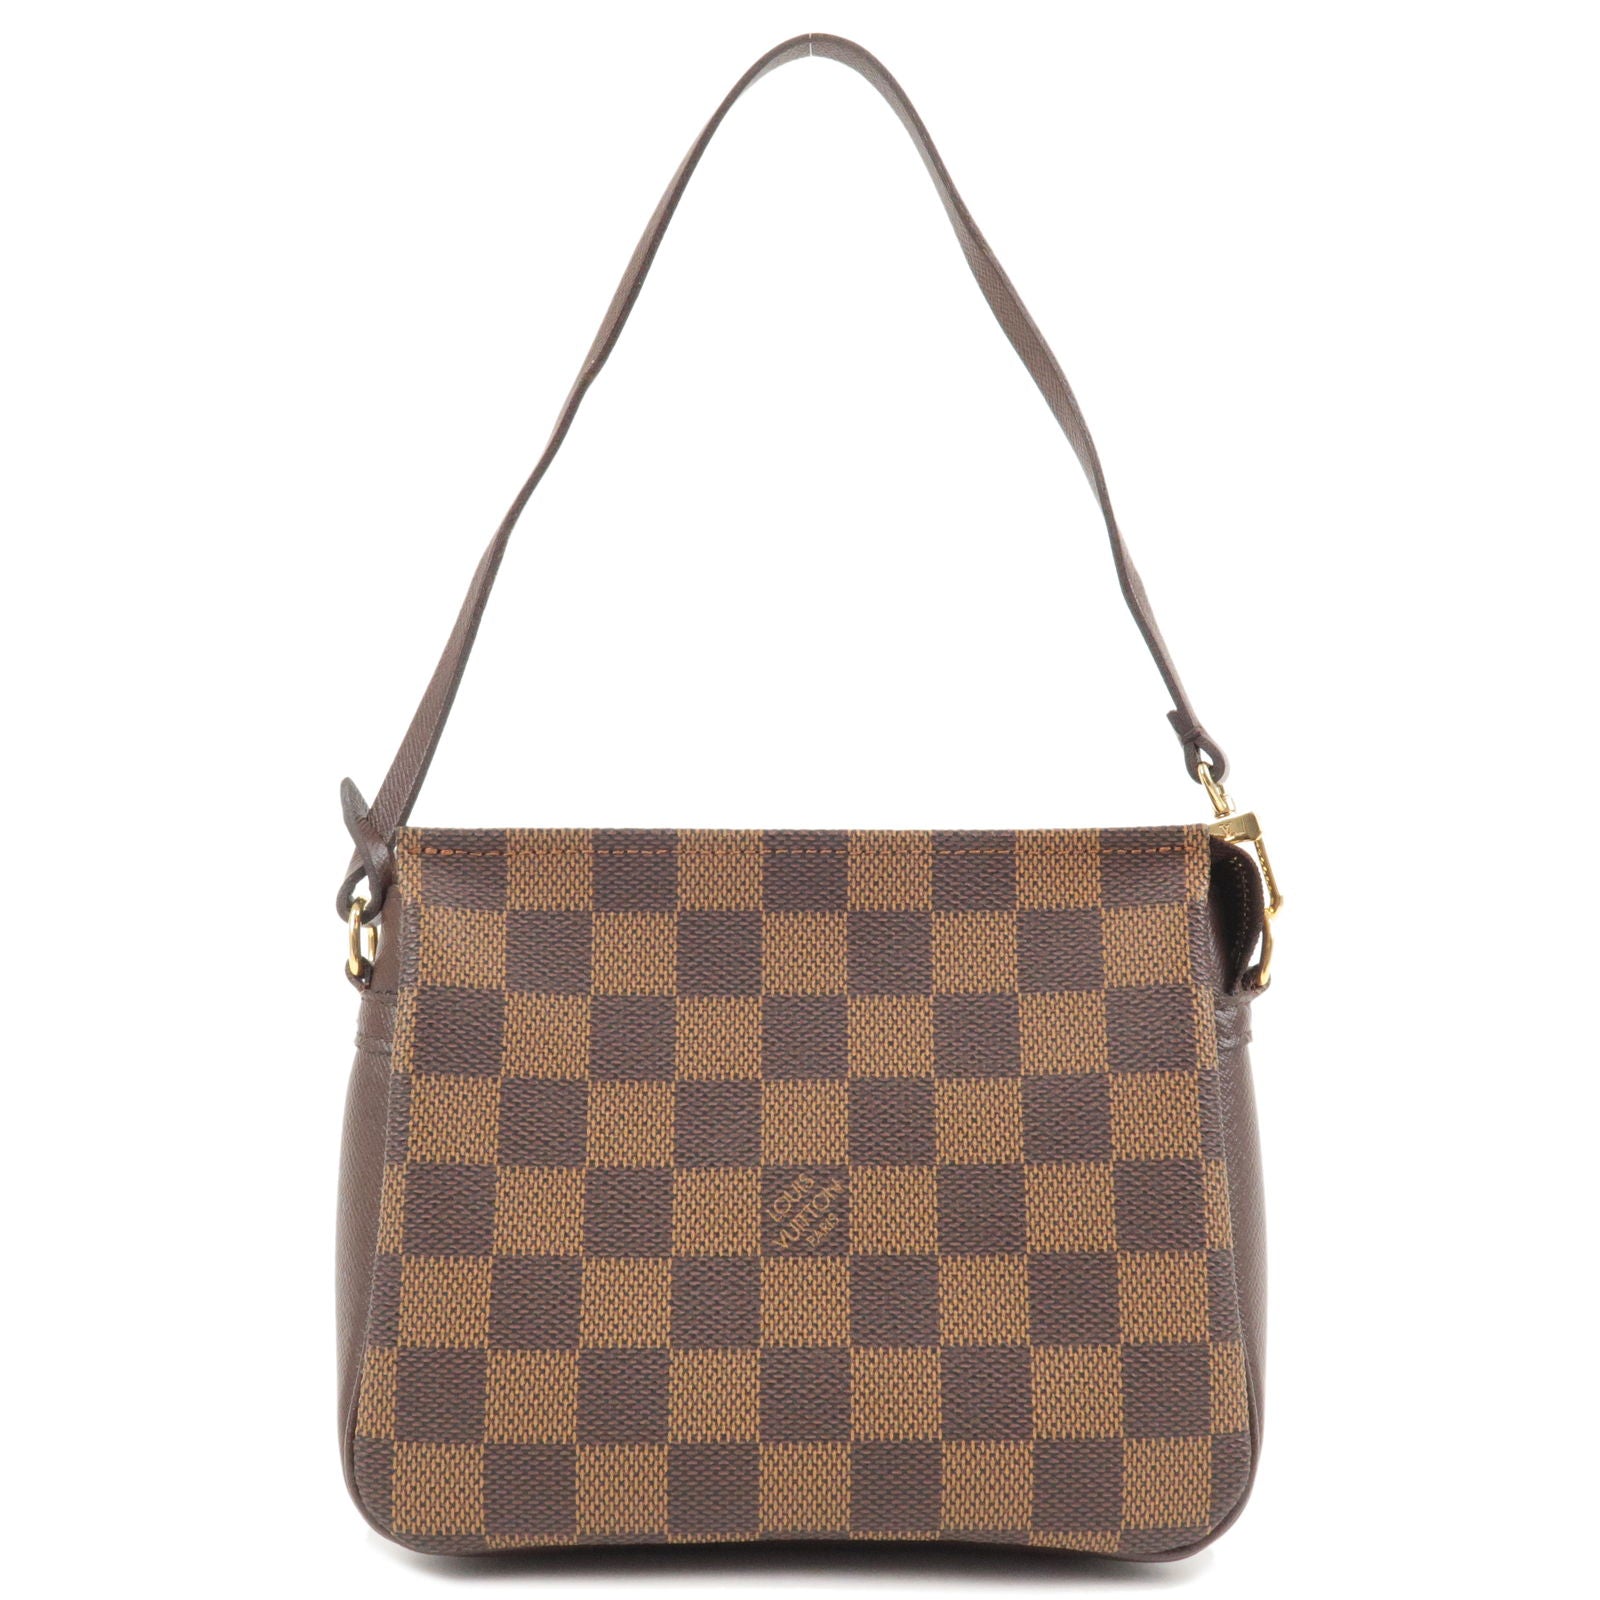 Louis Vuitton Damier Trousse Bag